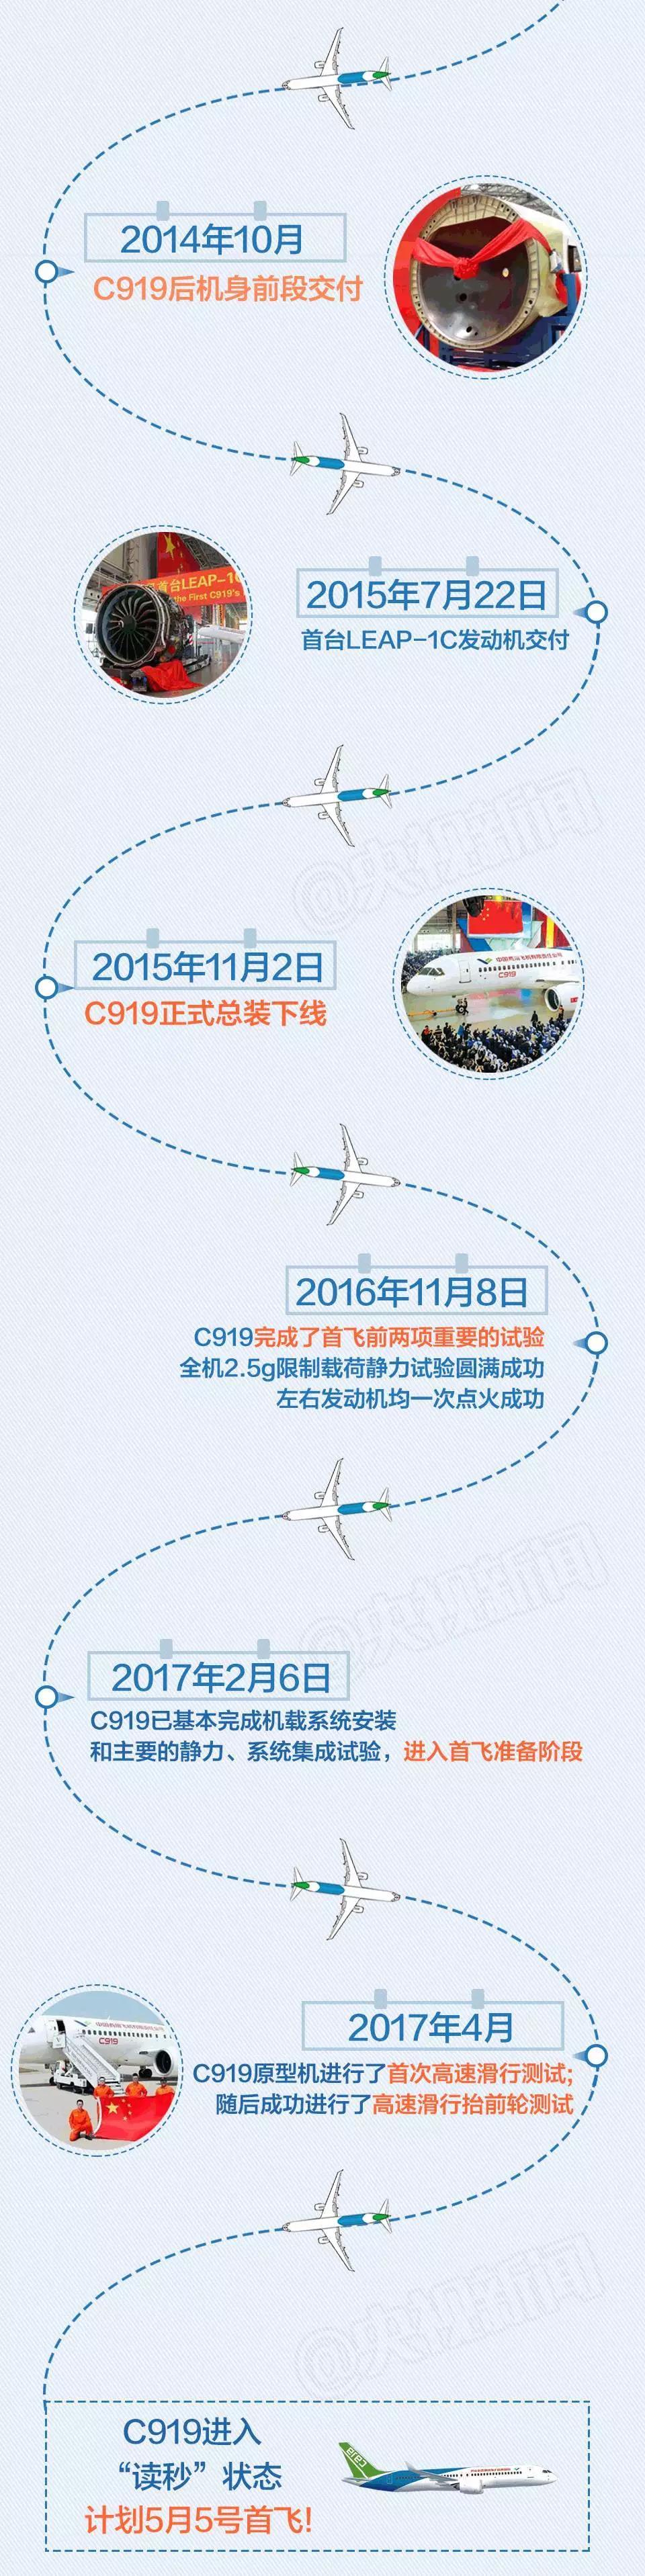 航司那些事第3期：国产大飞机周五上海浦东预定首飞